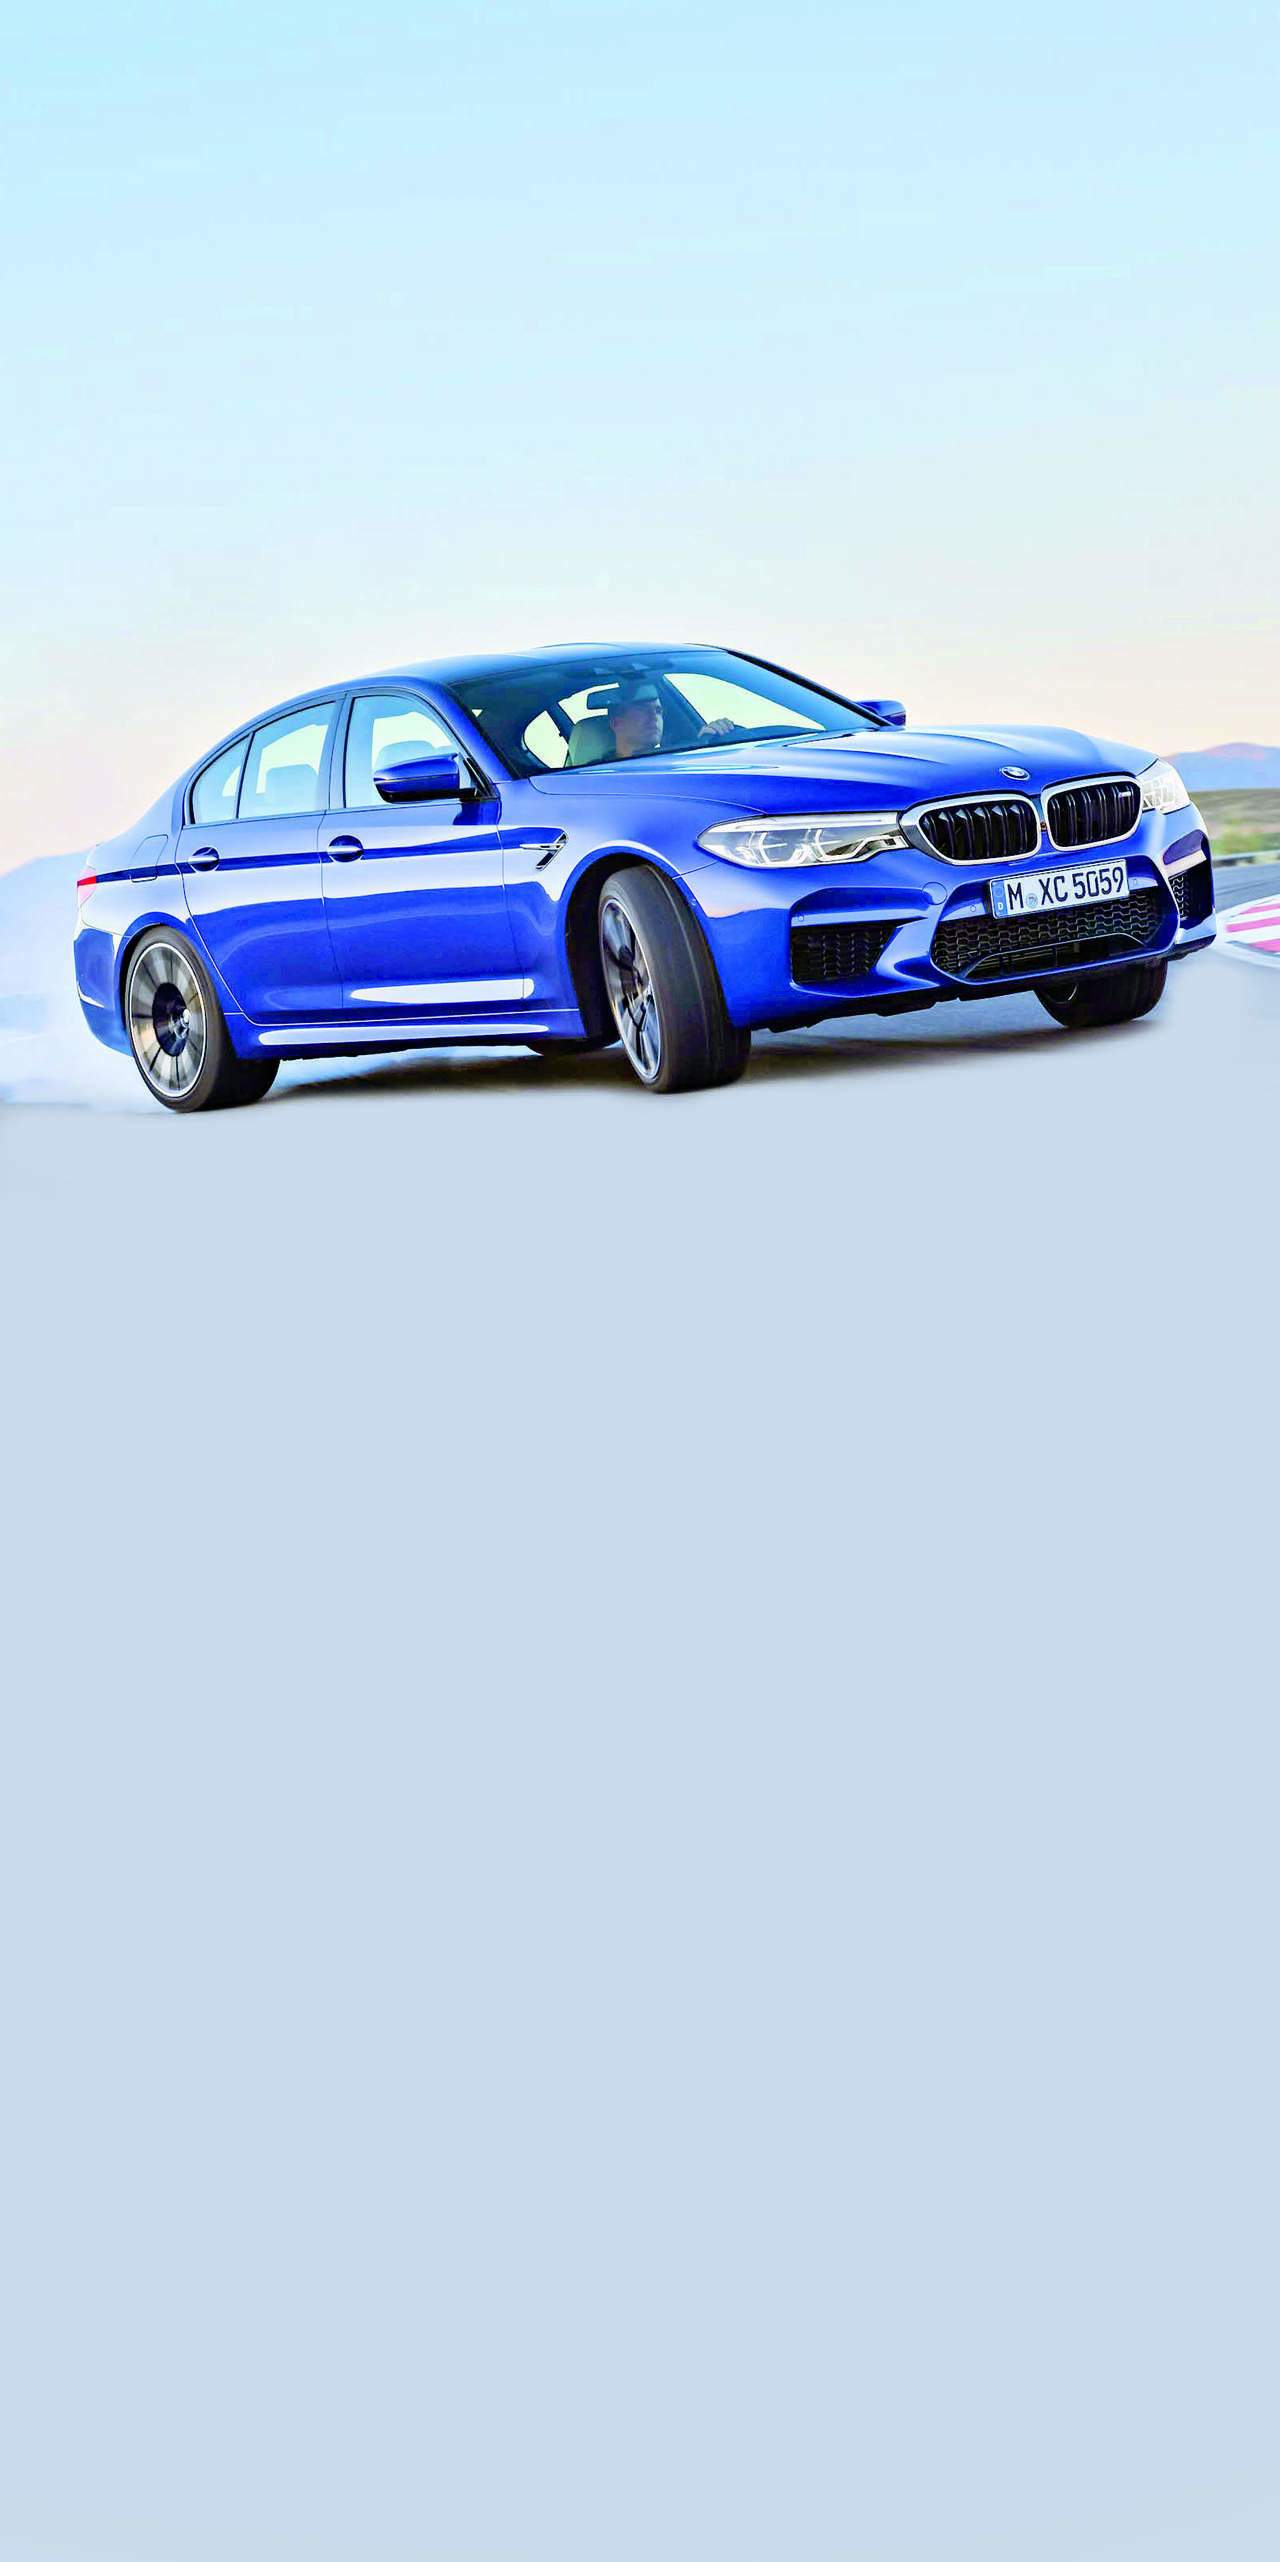 BMW se burla de la lógica y la física para entregar un excepcional M5 de nueva generación. (ARCHIVO